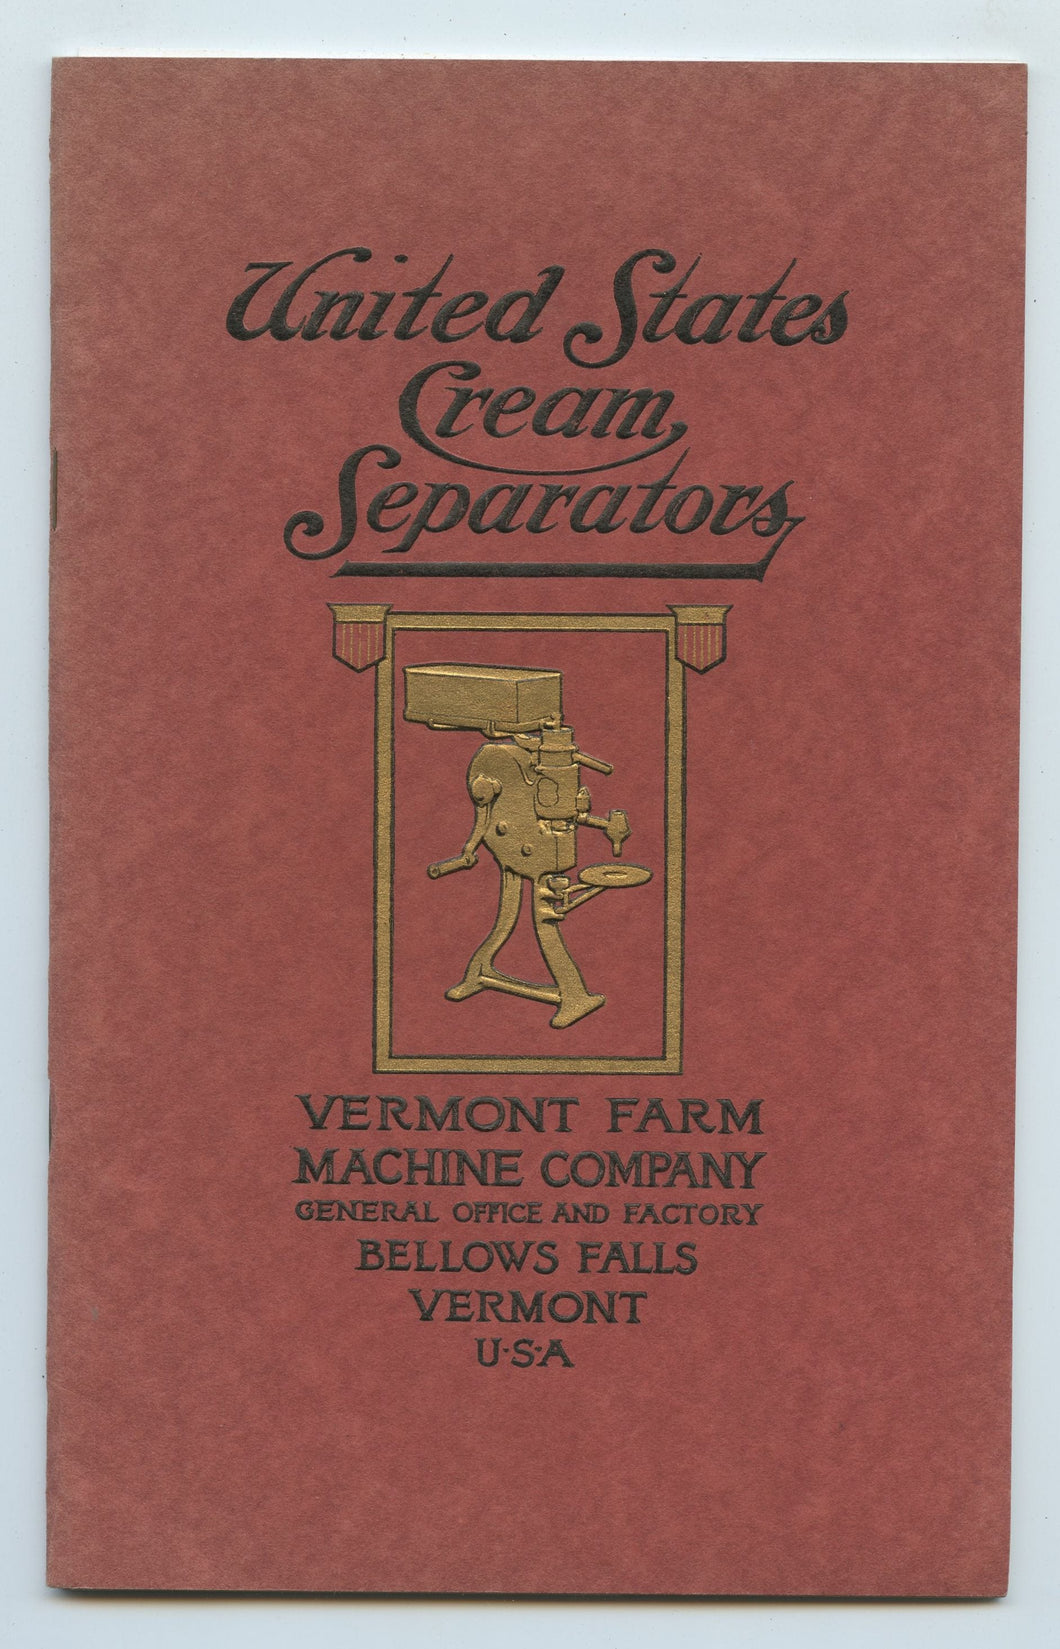 United States Cream Separators